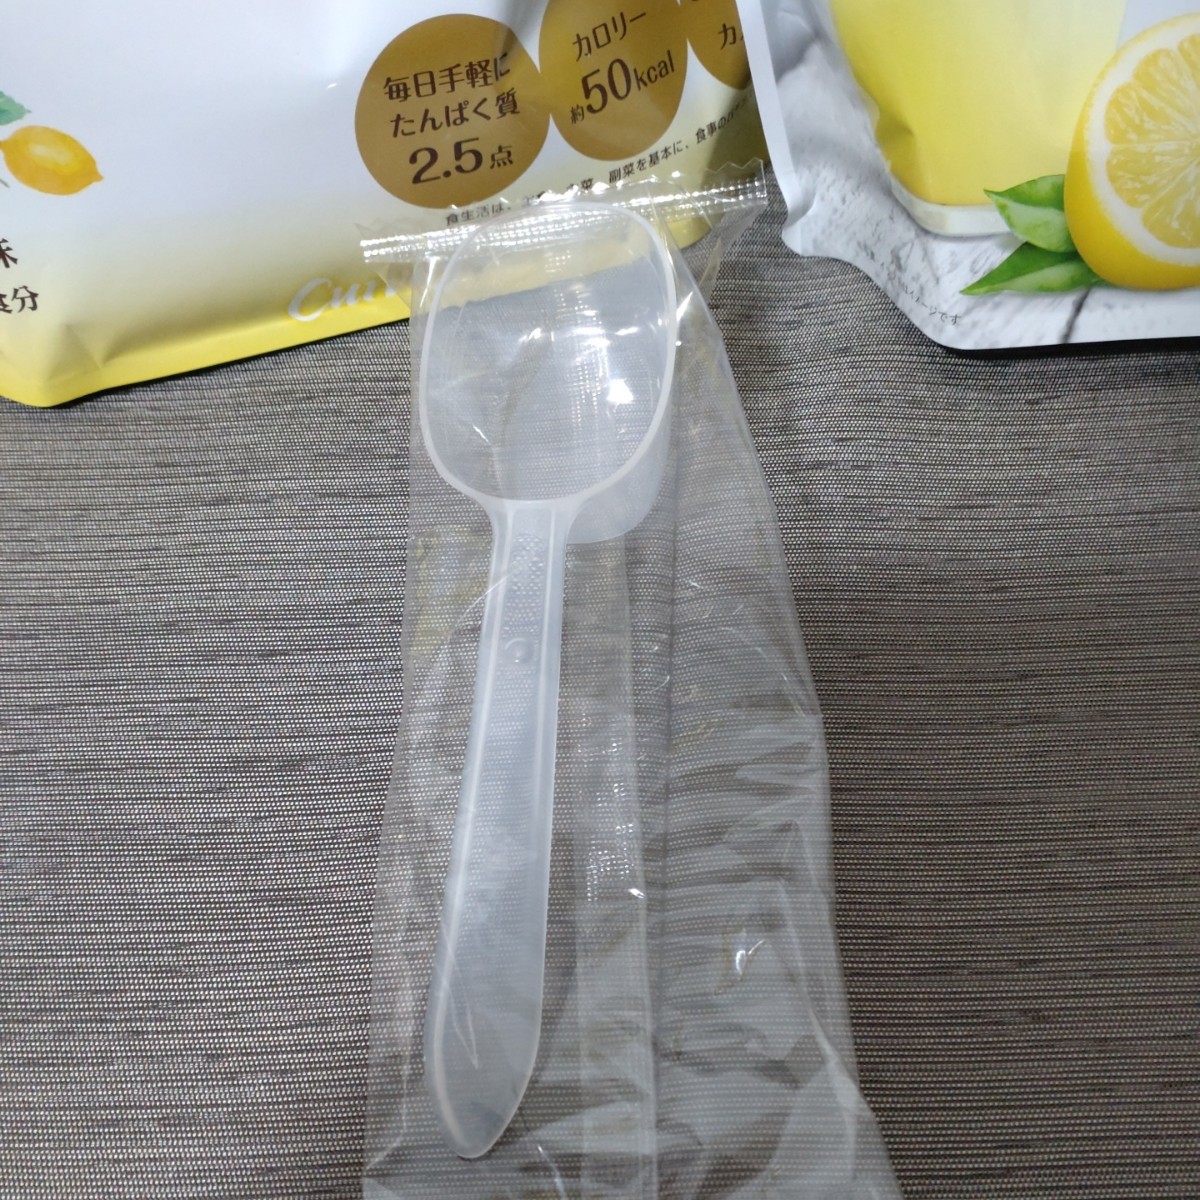 カーブス プロテイン レモン味 ２袋 スプーン 付き / Curves 新成分 